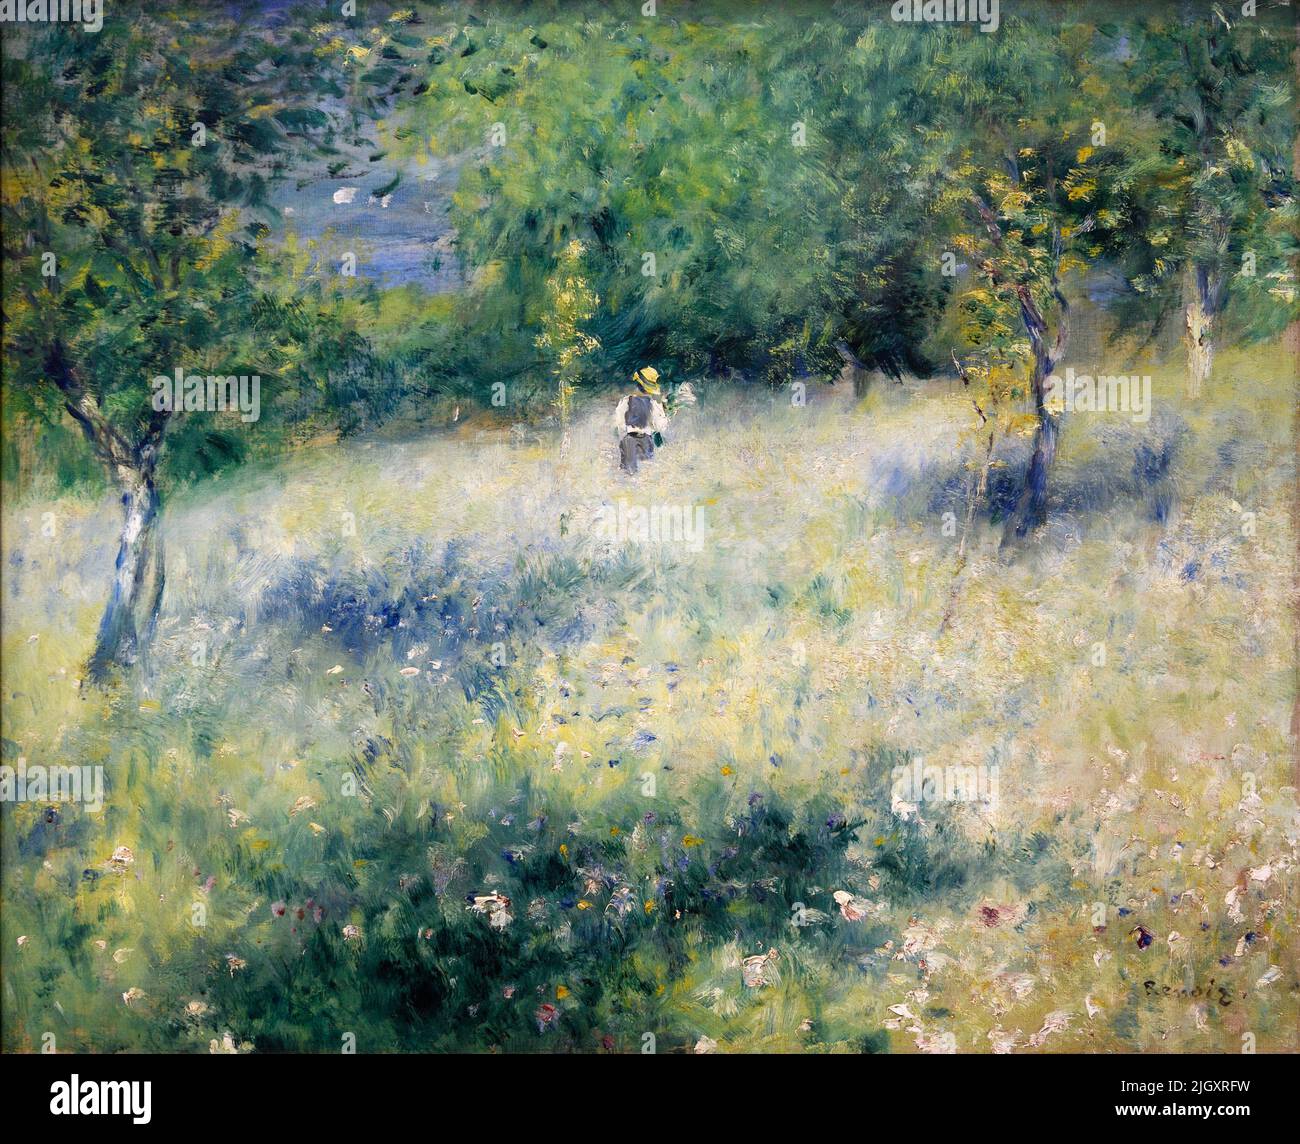 Printemps, Chatoul par Pierre Auguste Renoir (1841-1919), huile sur toile, c. 1873 Banque D'Images